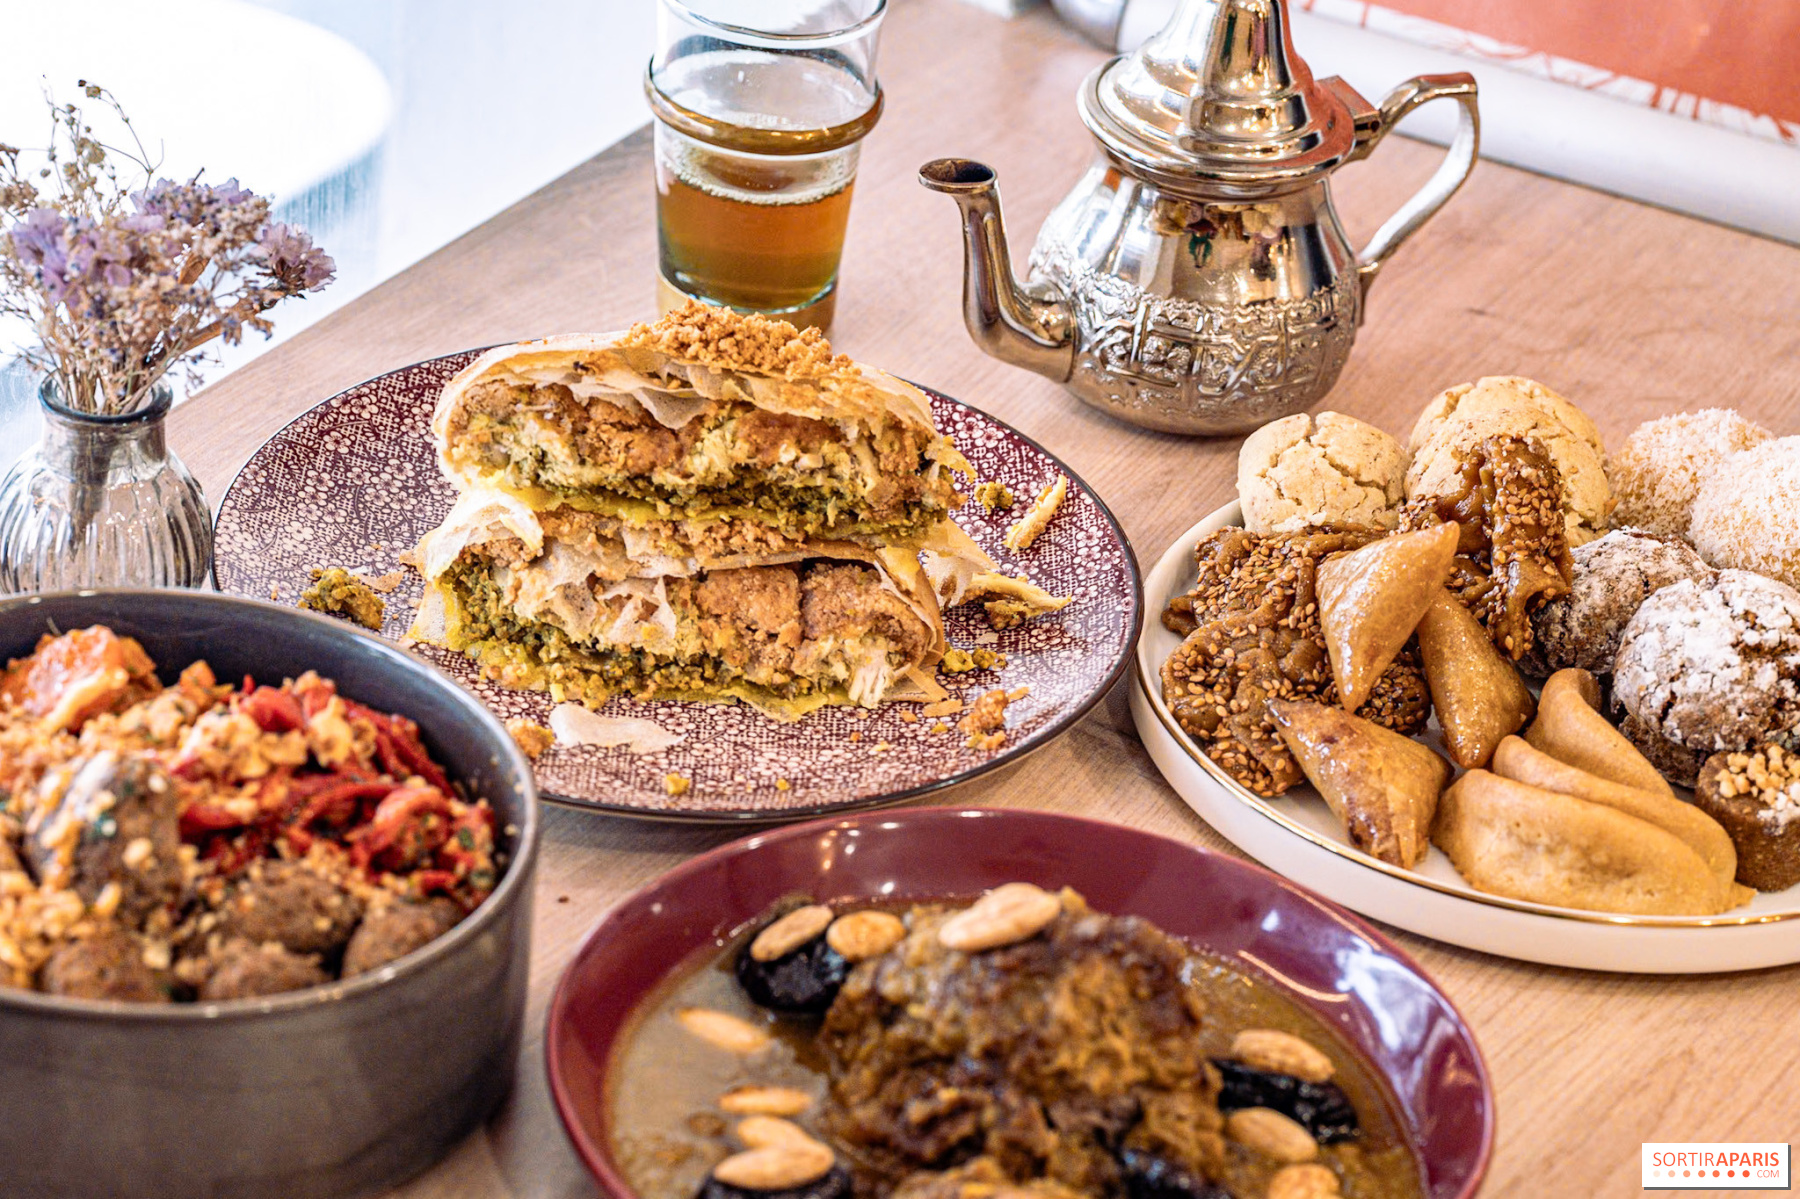 Teesalon hausgemachten Brunch und Patisserien am Maison Wochenende mit Ambre, und marokkanische Kantine